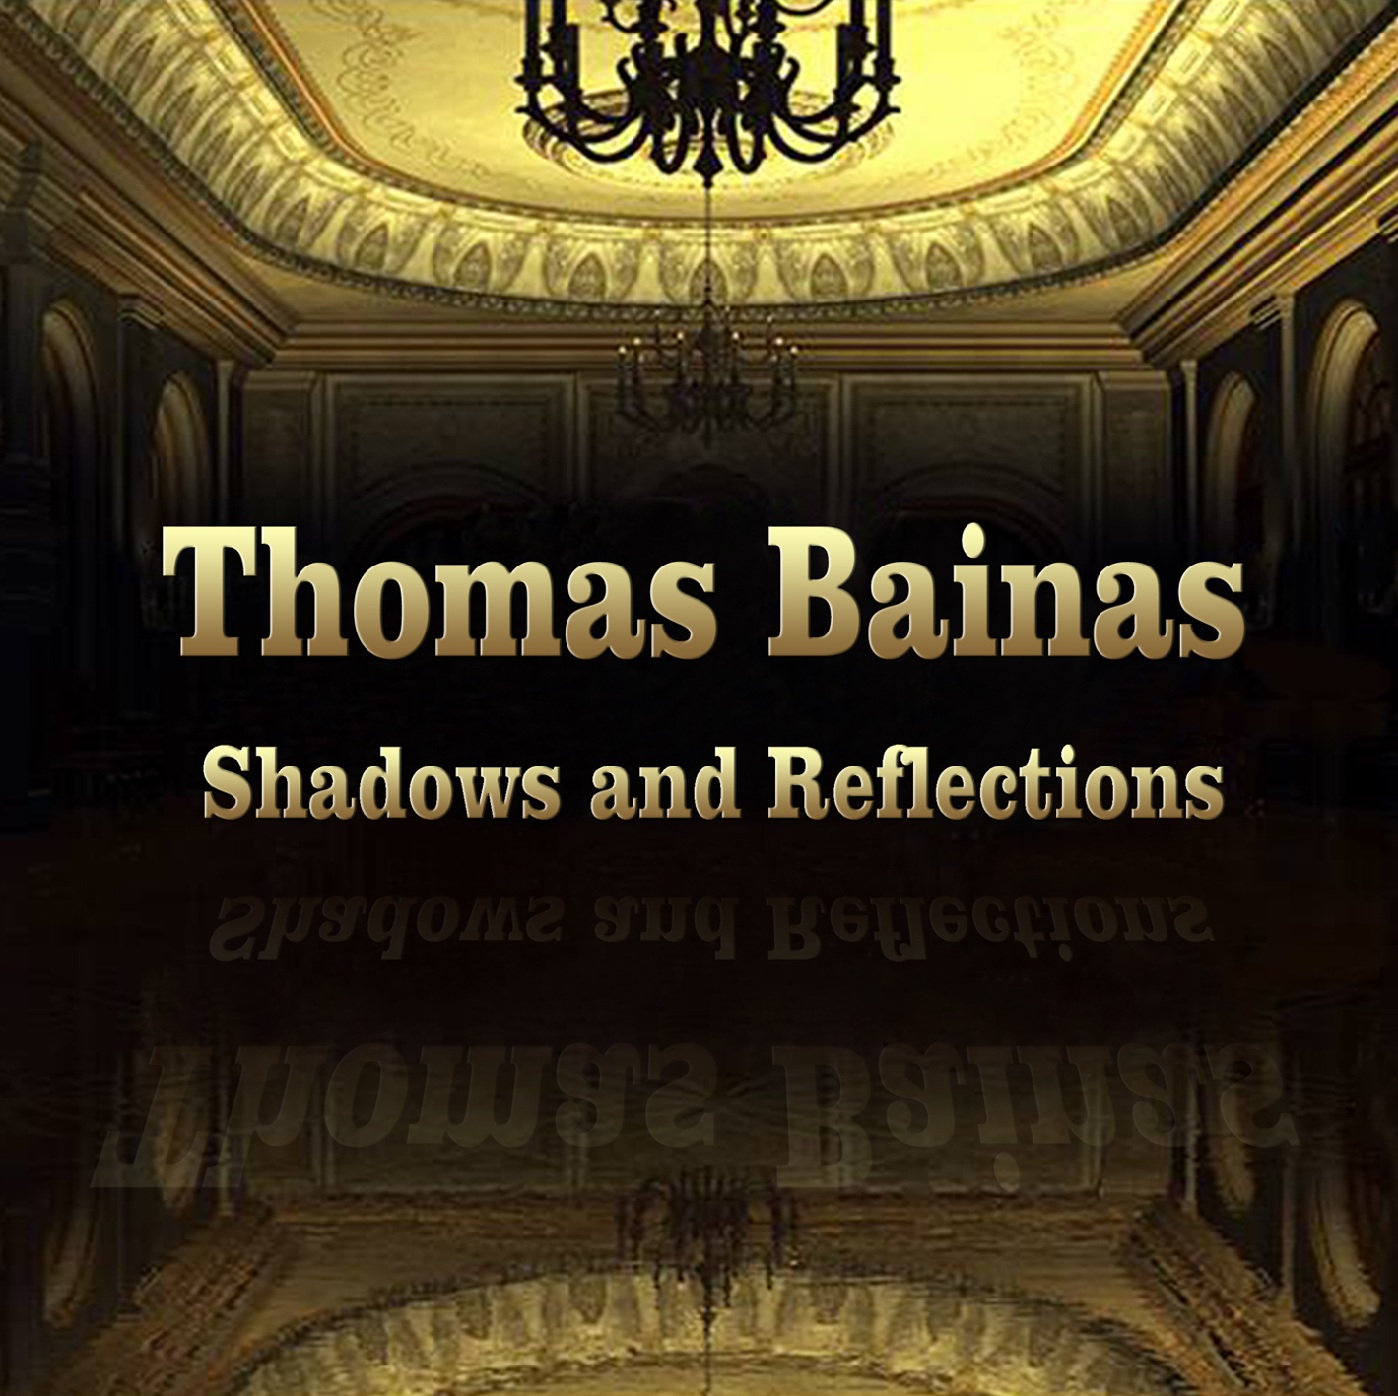 Thomas Bainas 3rd CD "Shadows and Reflections" (2016)